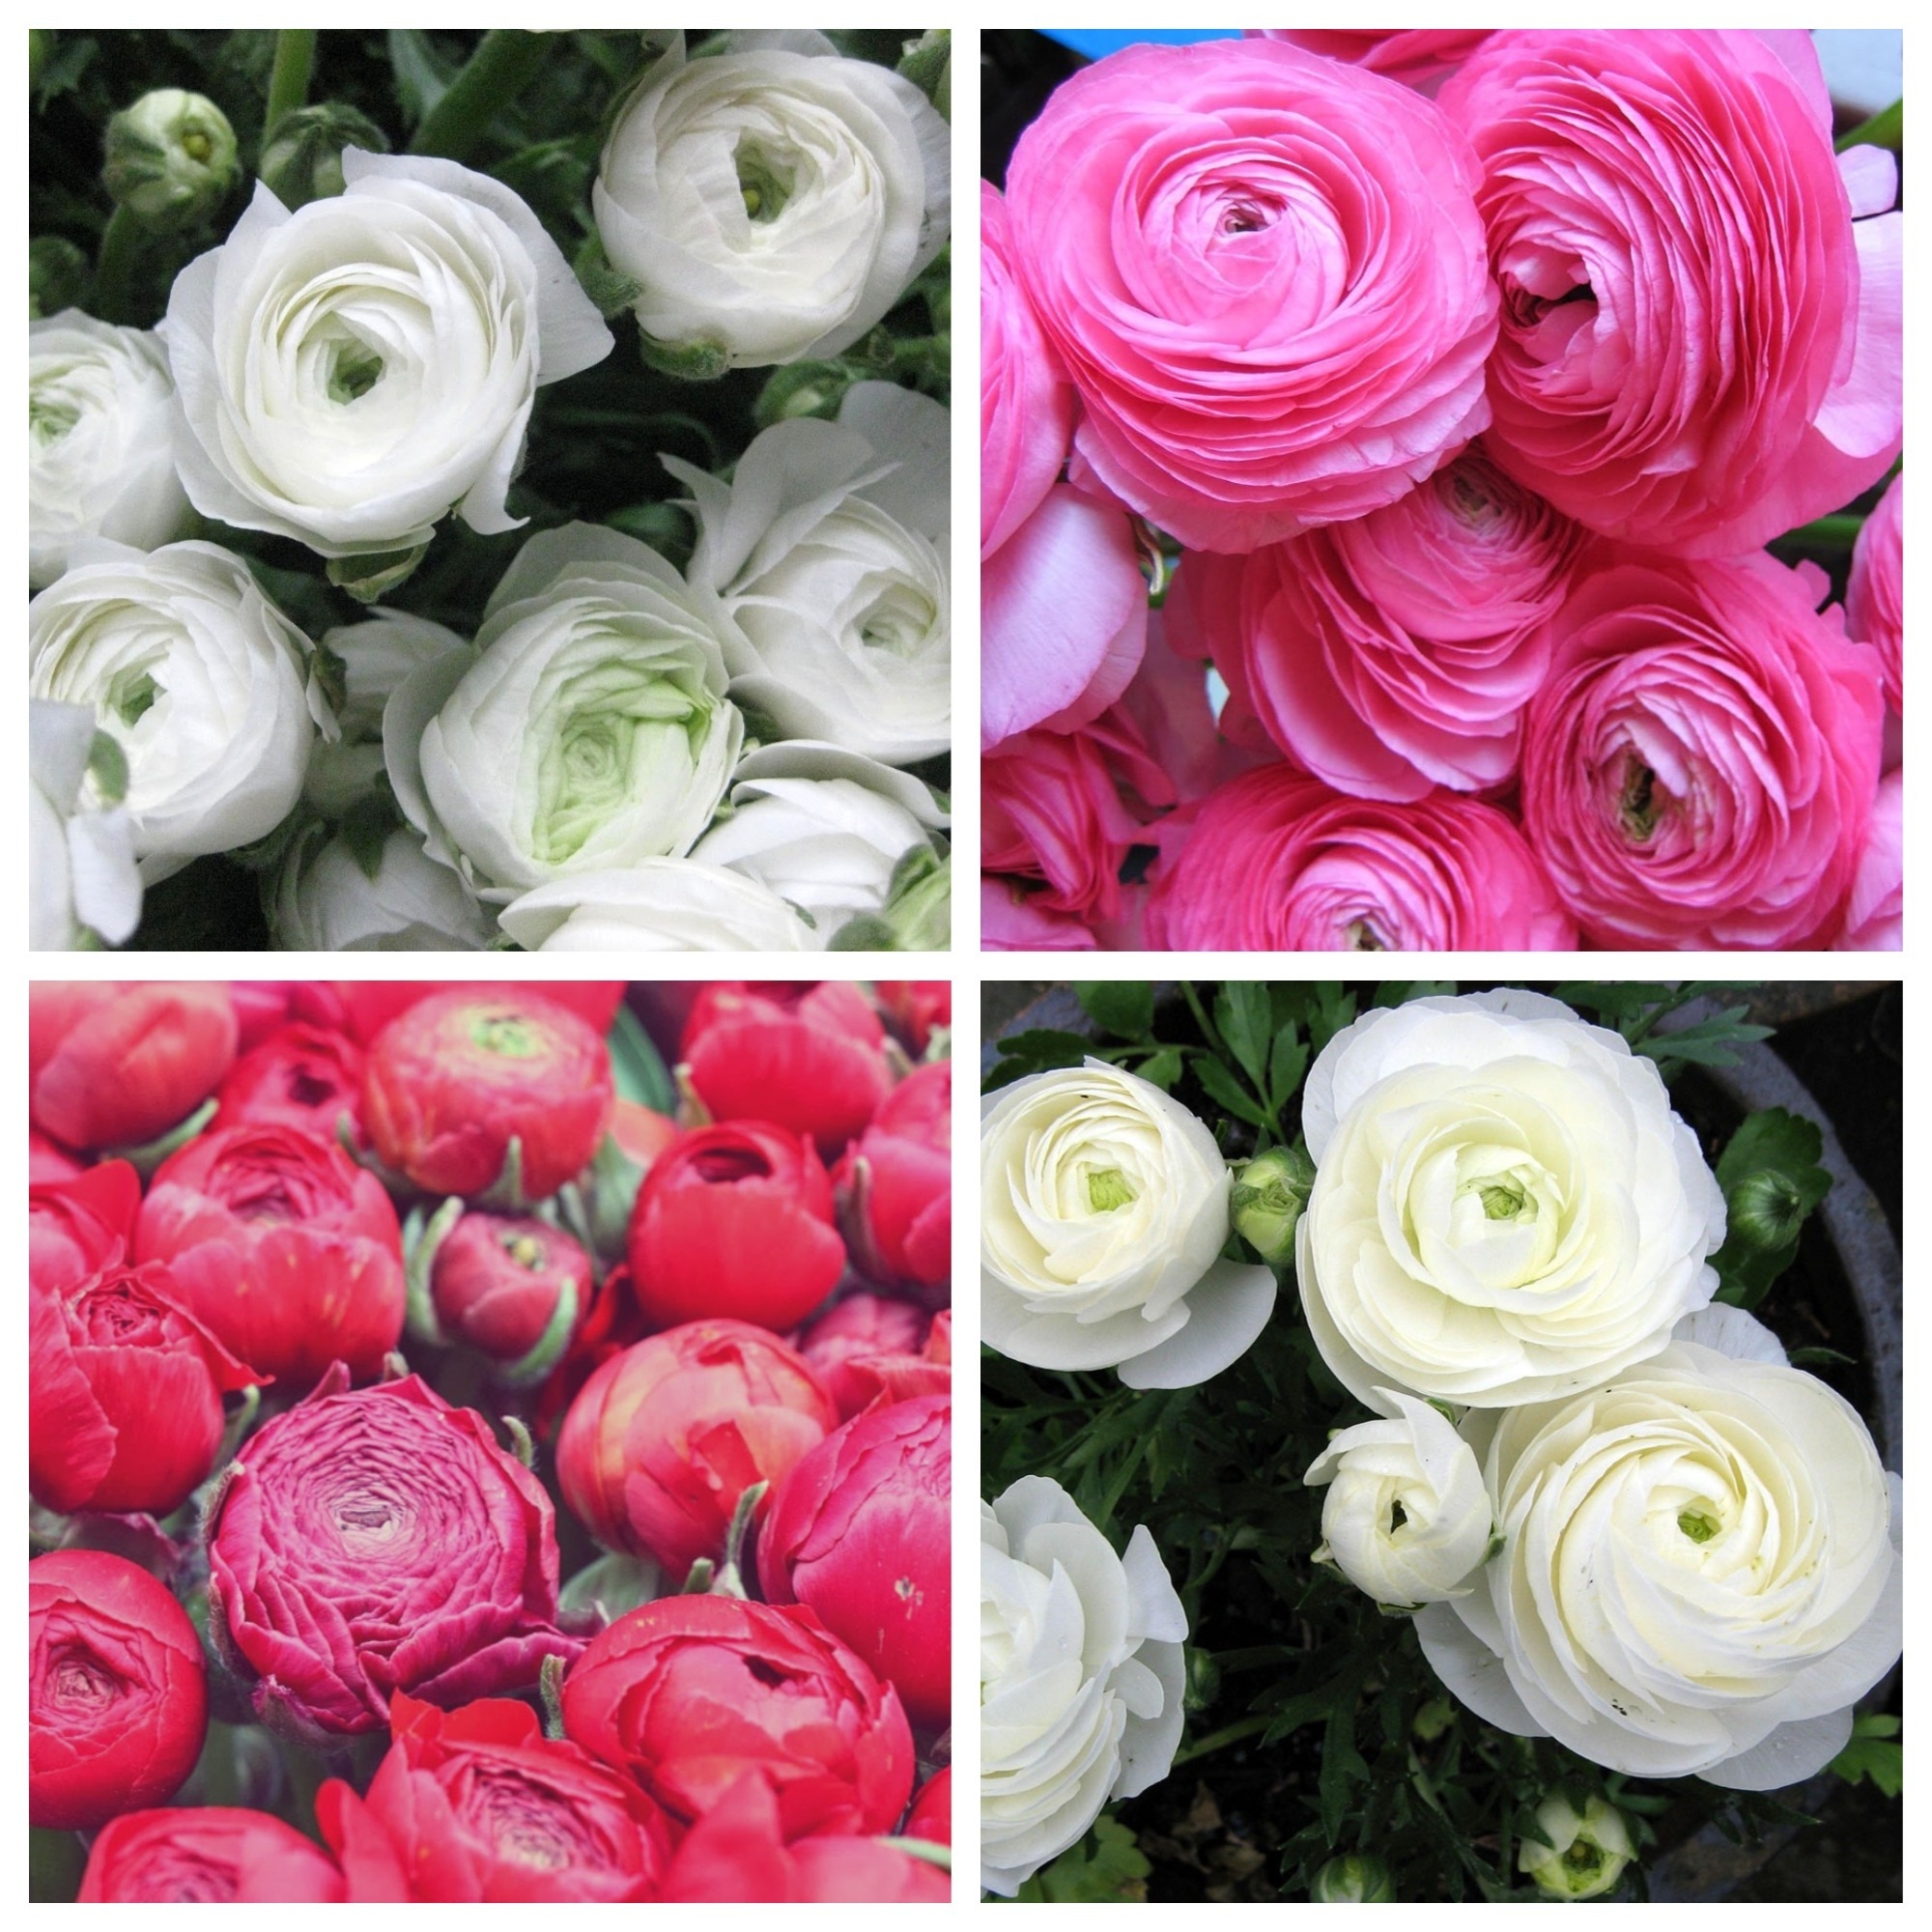 Renoncule rose + renoncule blanche - 100 pcs. – Garden Seeds Market |  Livraison gratuite